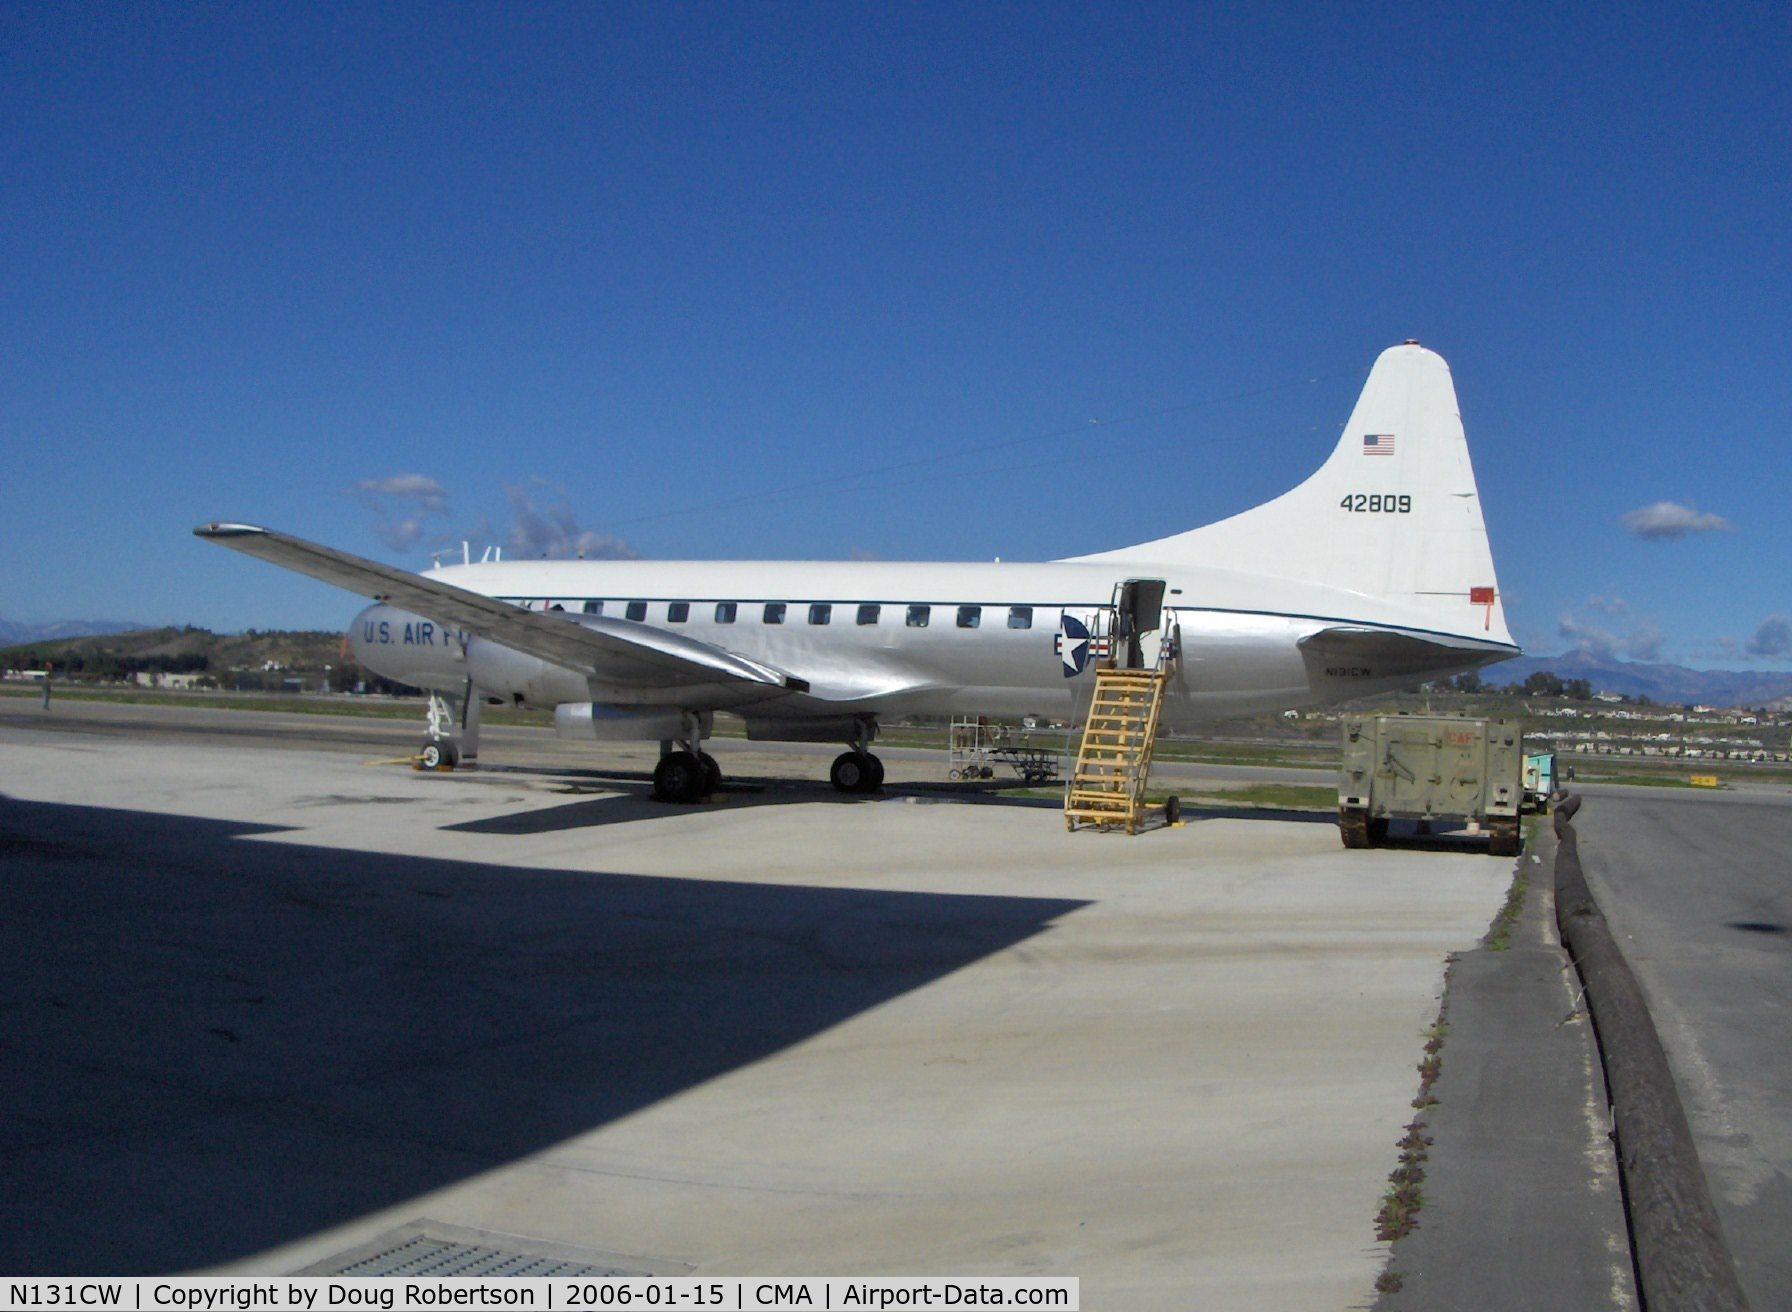 N131CW, 1954 Convair C-131D Samaritan C/N 205, 1954 Convair CV-340-67 as 2004 Convair C-131D 'SAMARITAN', 2 2,500 Hp P&W R-2800-103W radials, Exp. class